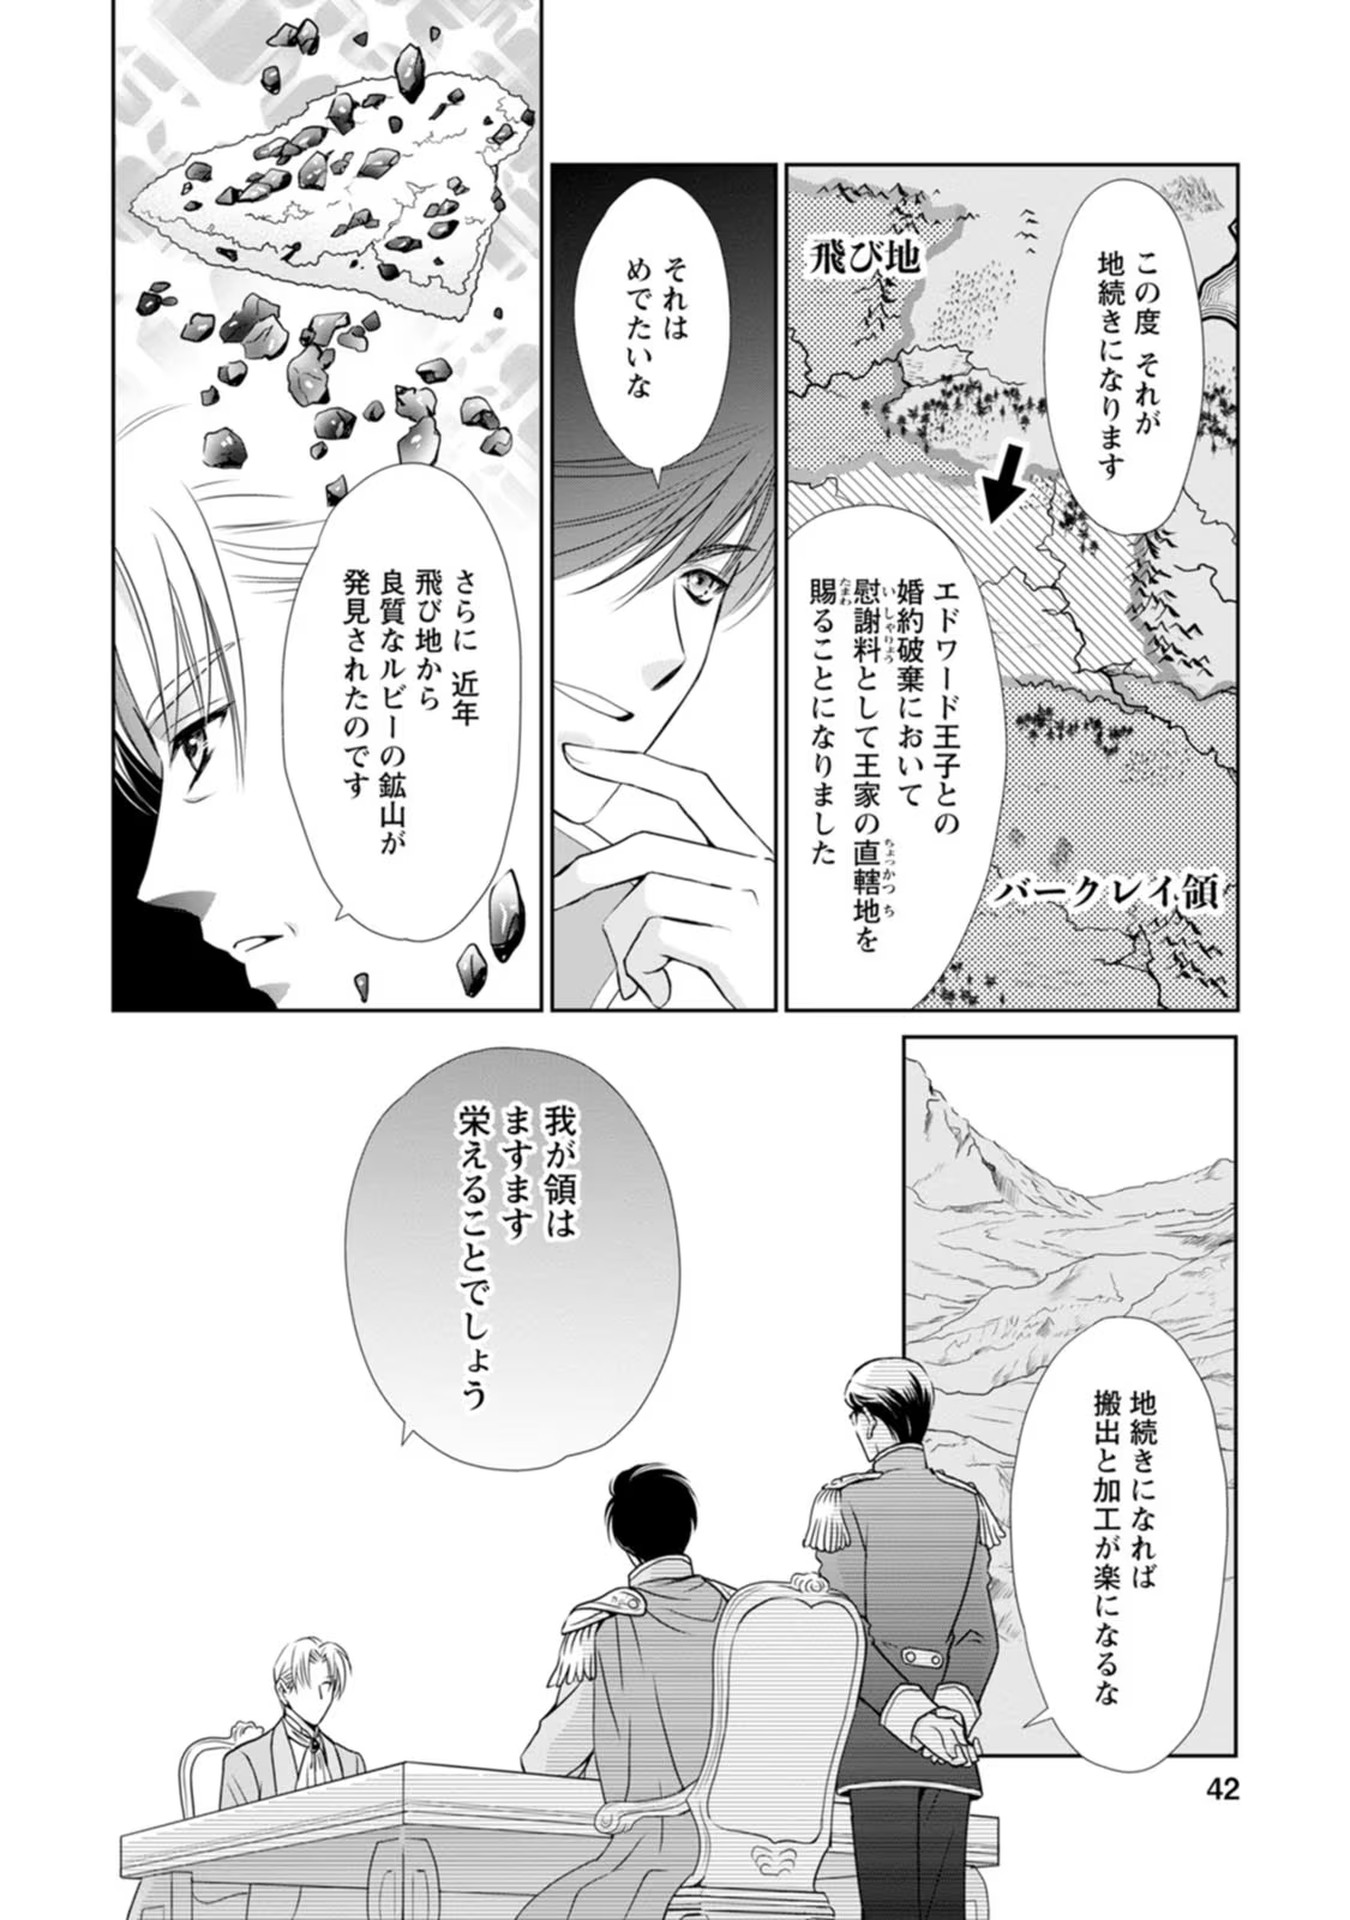 Shinjitsu no Ai wo Mitsuketa to Iwarete Konyaku Haki Saretanode, Fukuen wo Semararete mo Imasara mo Osoi desu! - Chapter 7 - Page 8